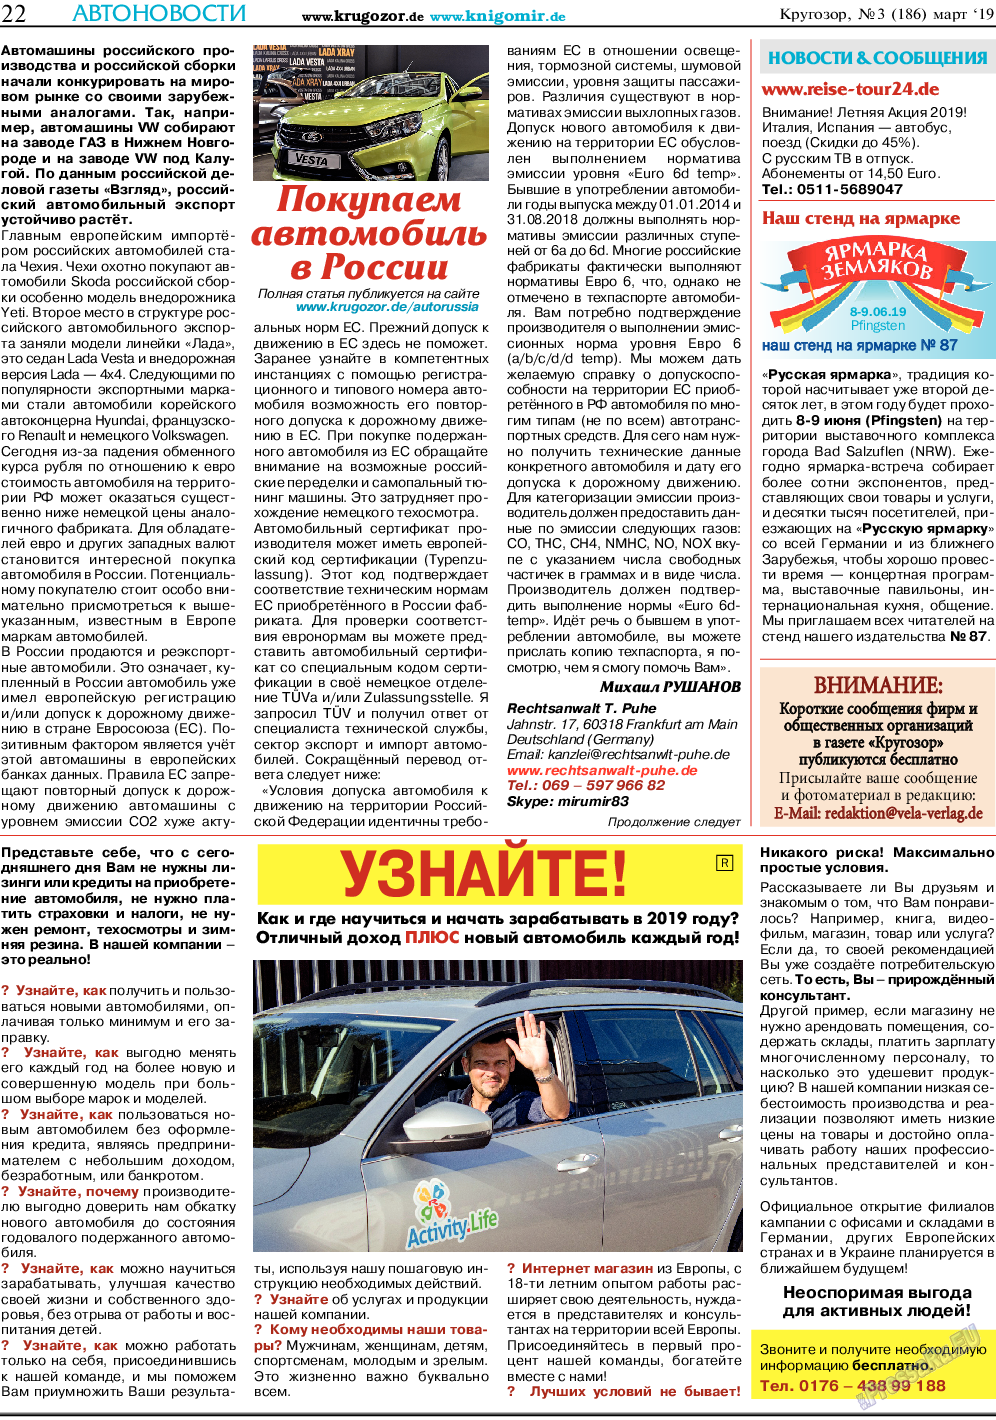 Кругозор, газета. 2019 №3 стр.22